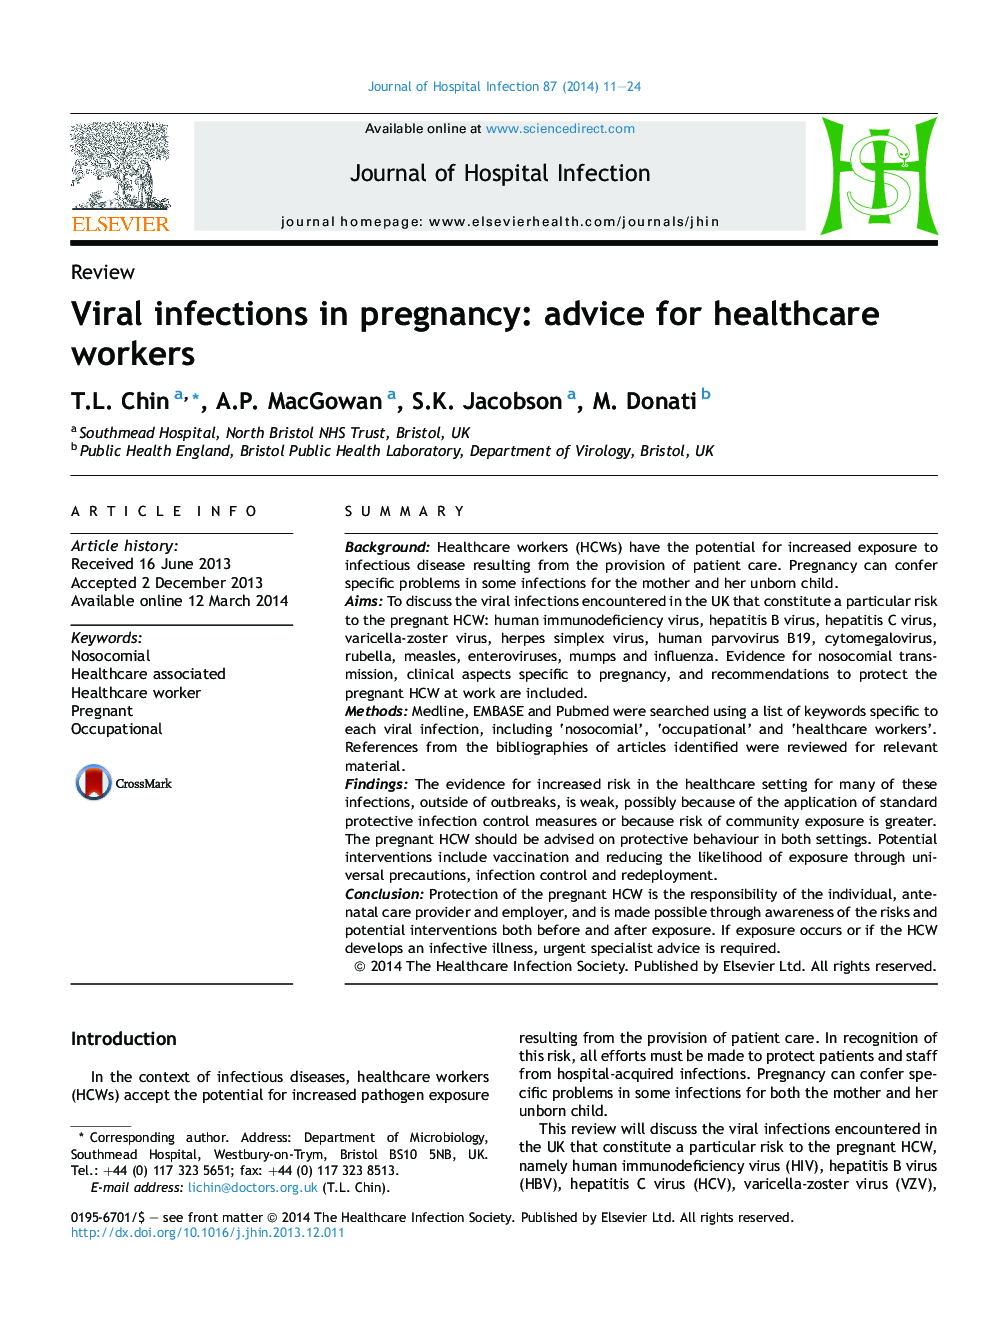 عفونت ویروسی در دوران بارداری: توصیه برای کارکنان مراقبت های بهداشتی 